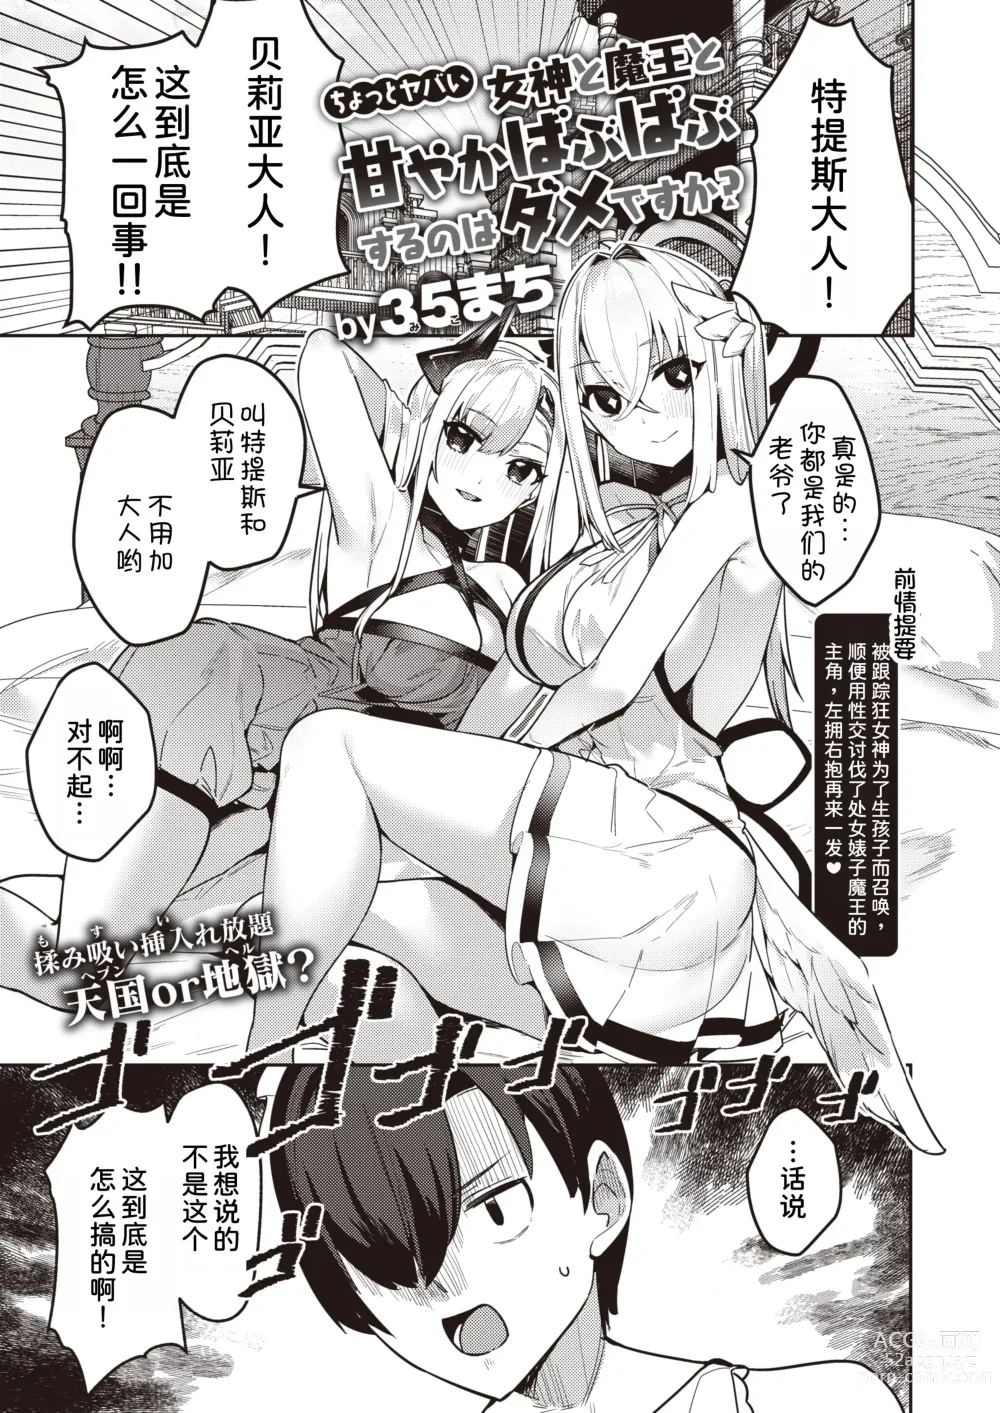 Page 2 of manga Chotto Yabai Megami to Maou to Amayakababubabu Suru no wa Dame desu ka?